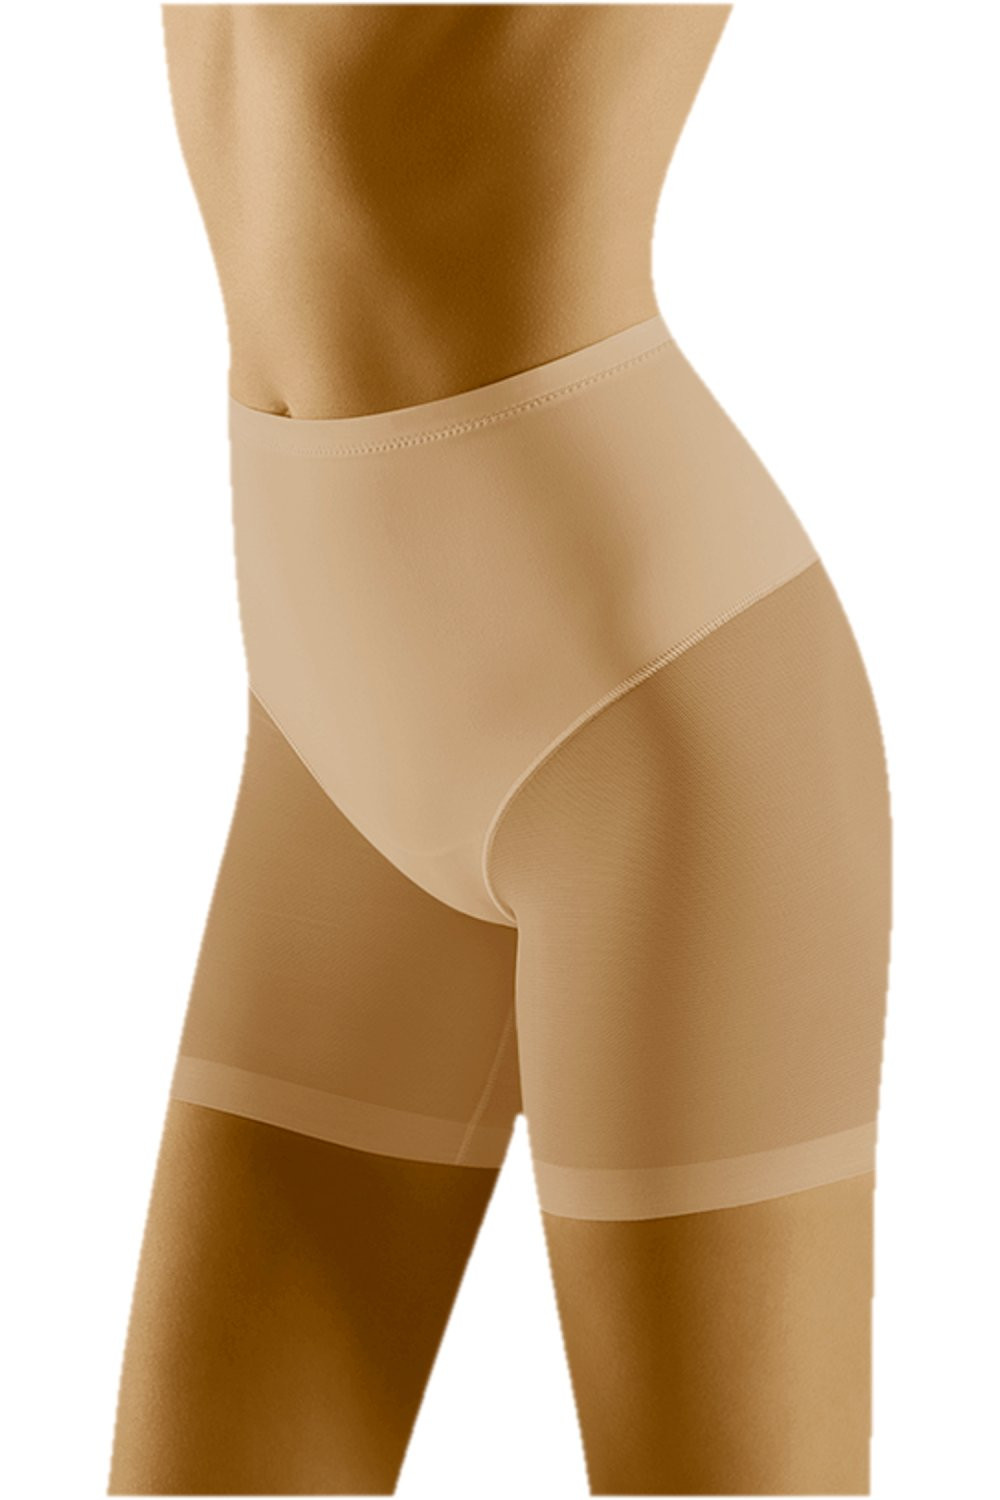 Stahovací kalhotky model 17180326 beige WOLBAR Béžová L - Wol-Bar